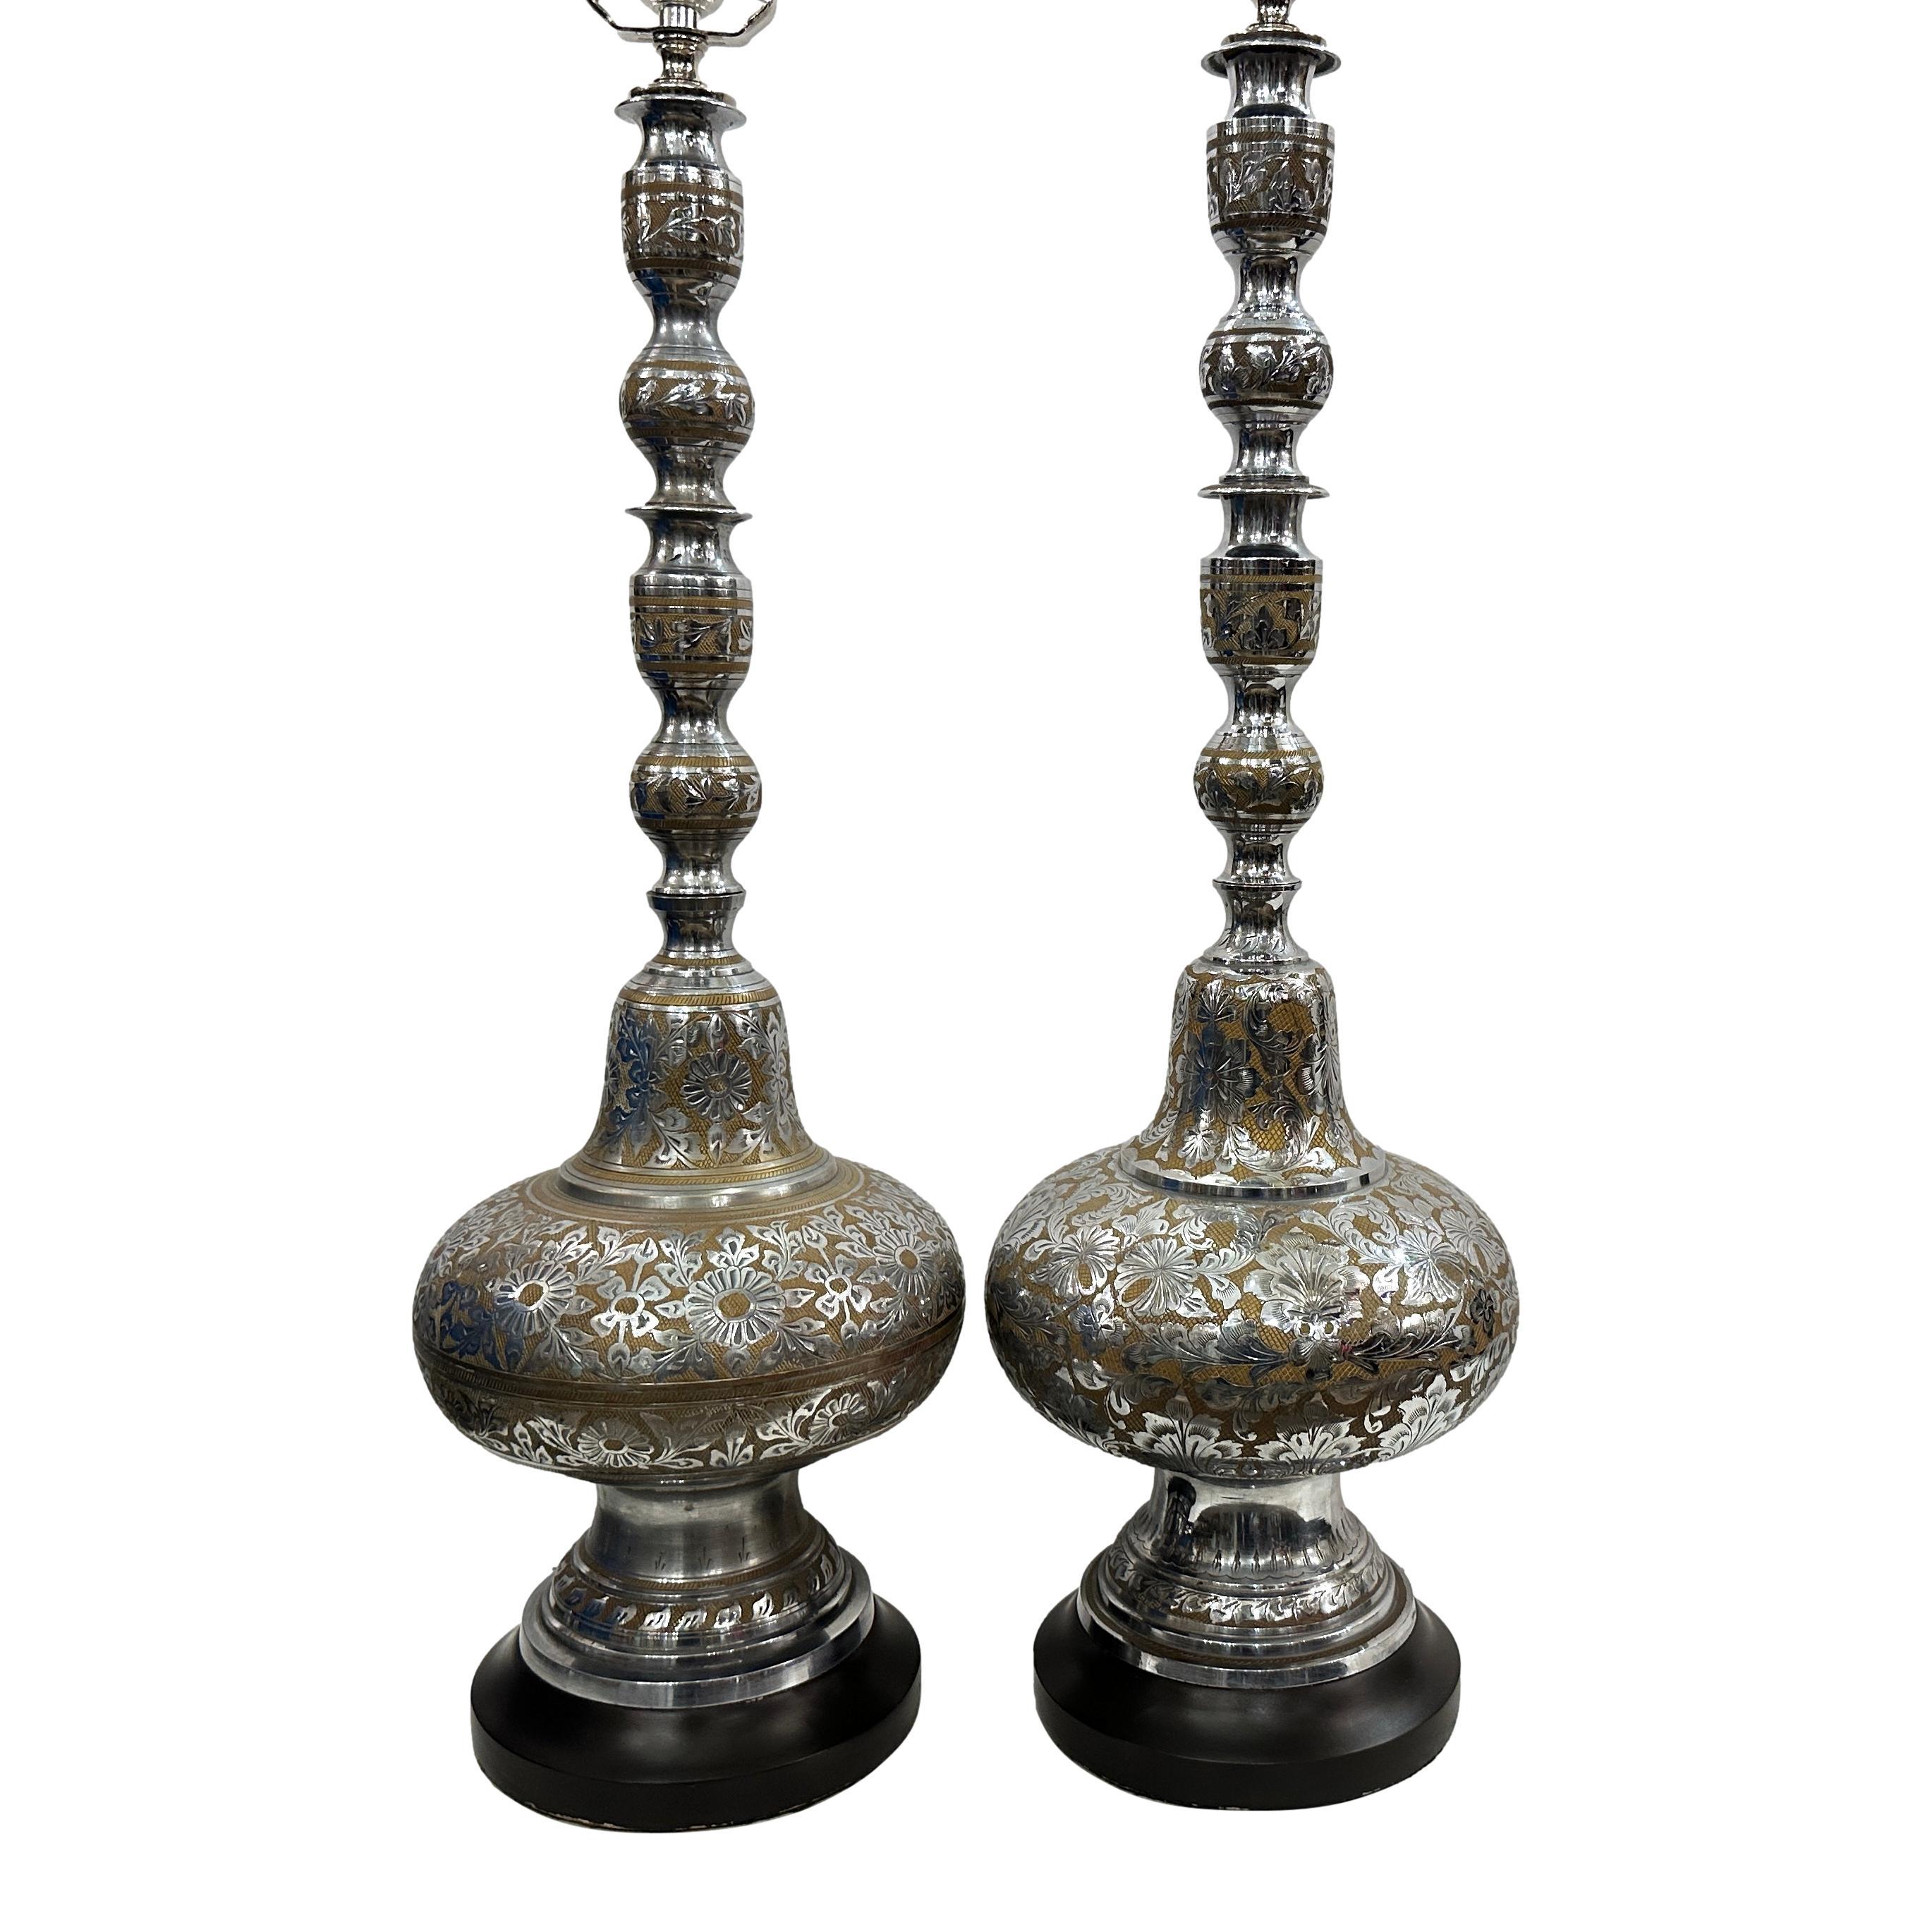 Paire de lampes de table persanes des années 1960 à décor floral gravé.

Mesures :
Hauteur du corps : 25